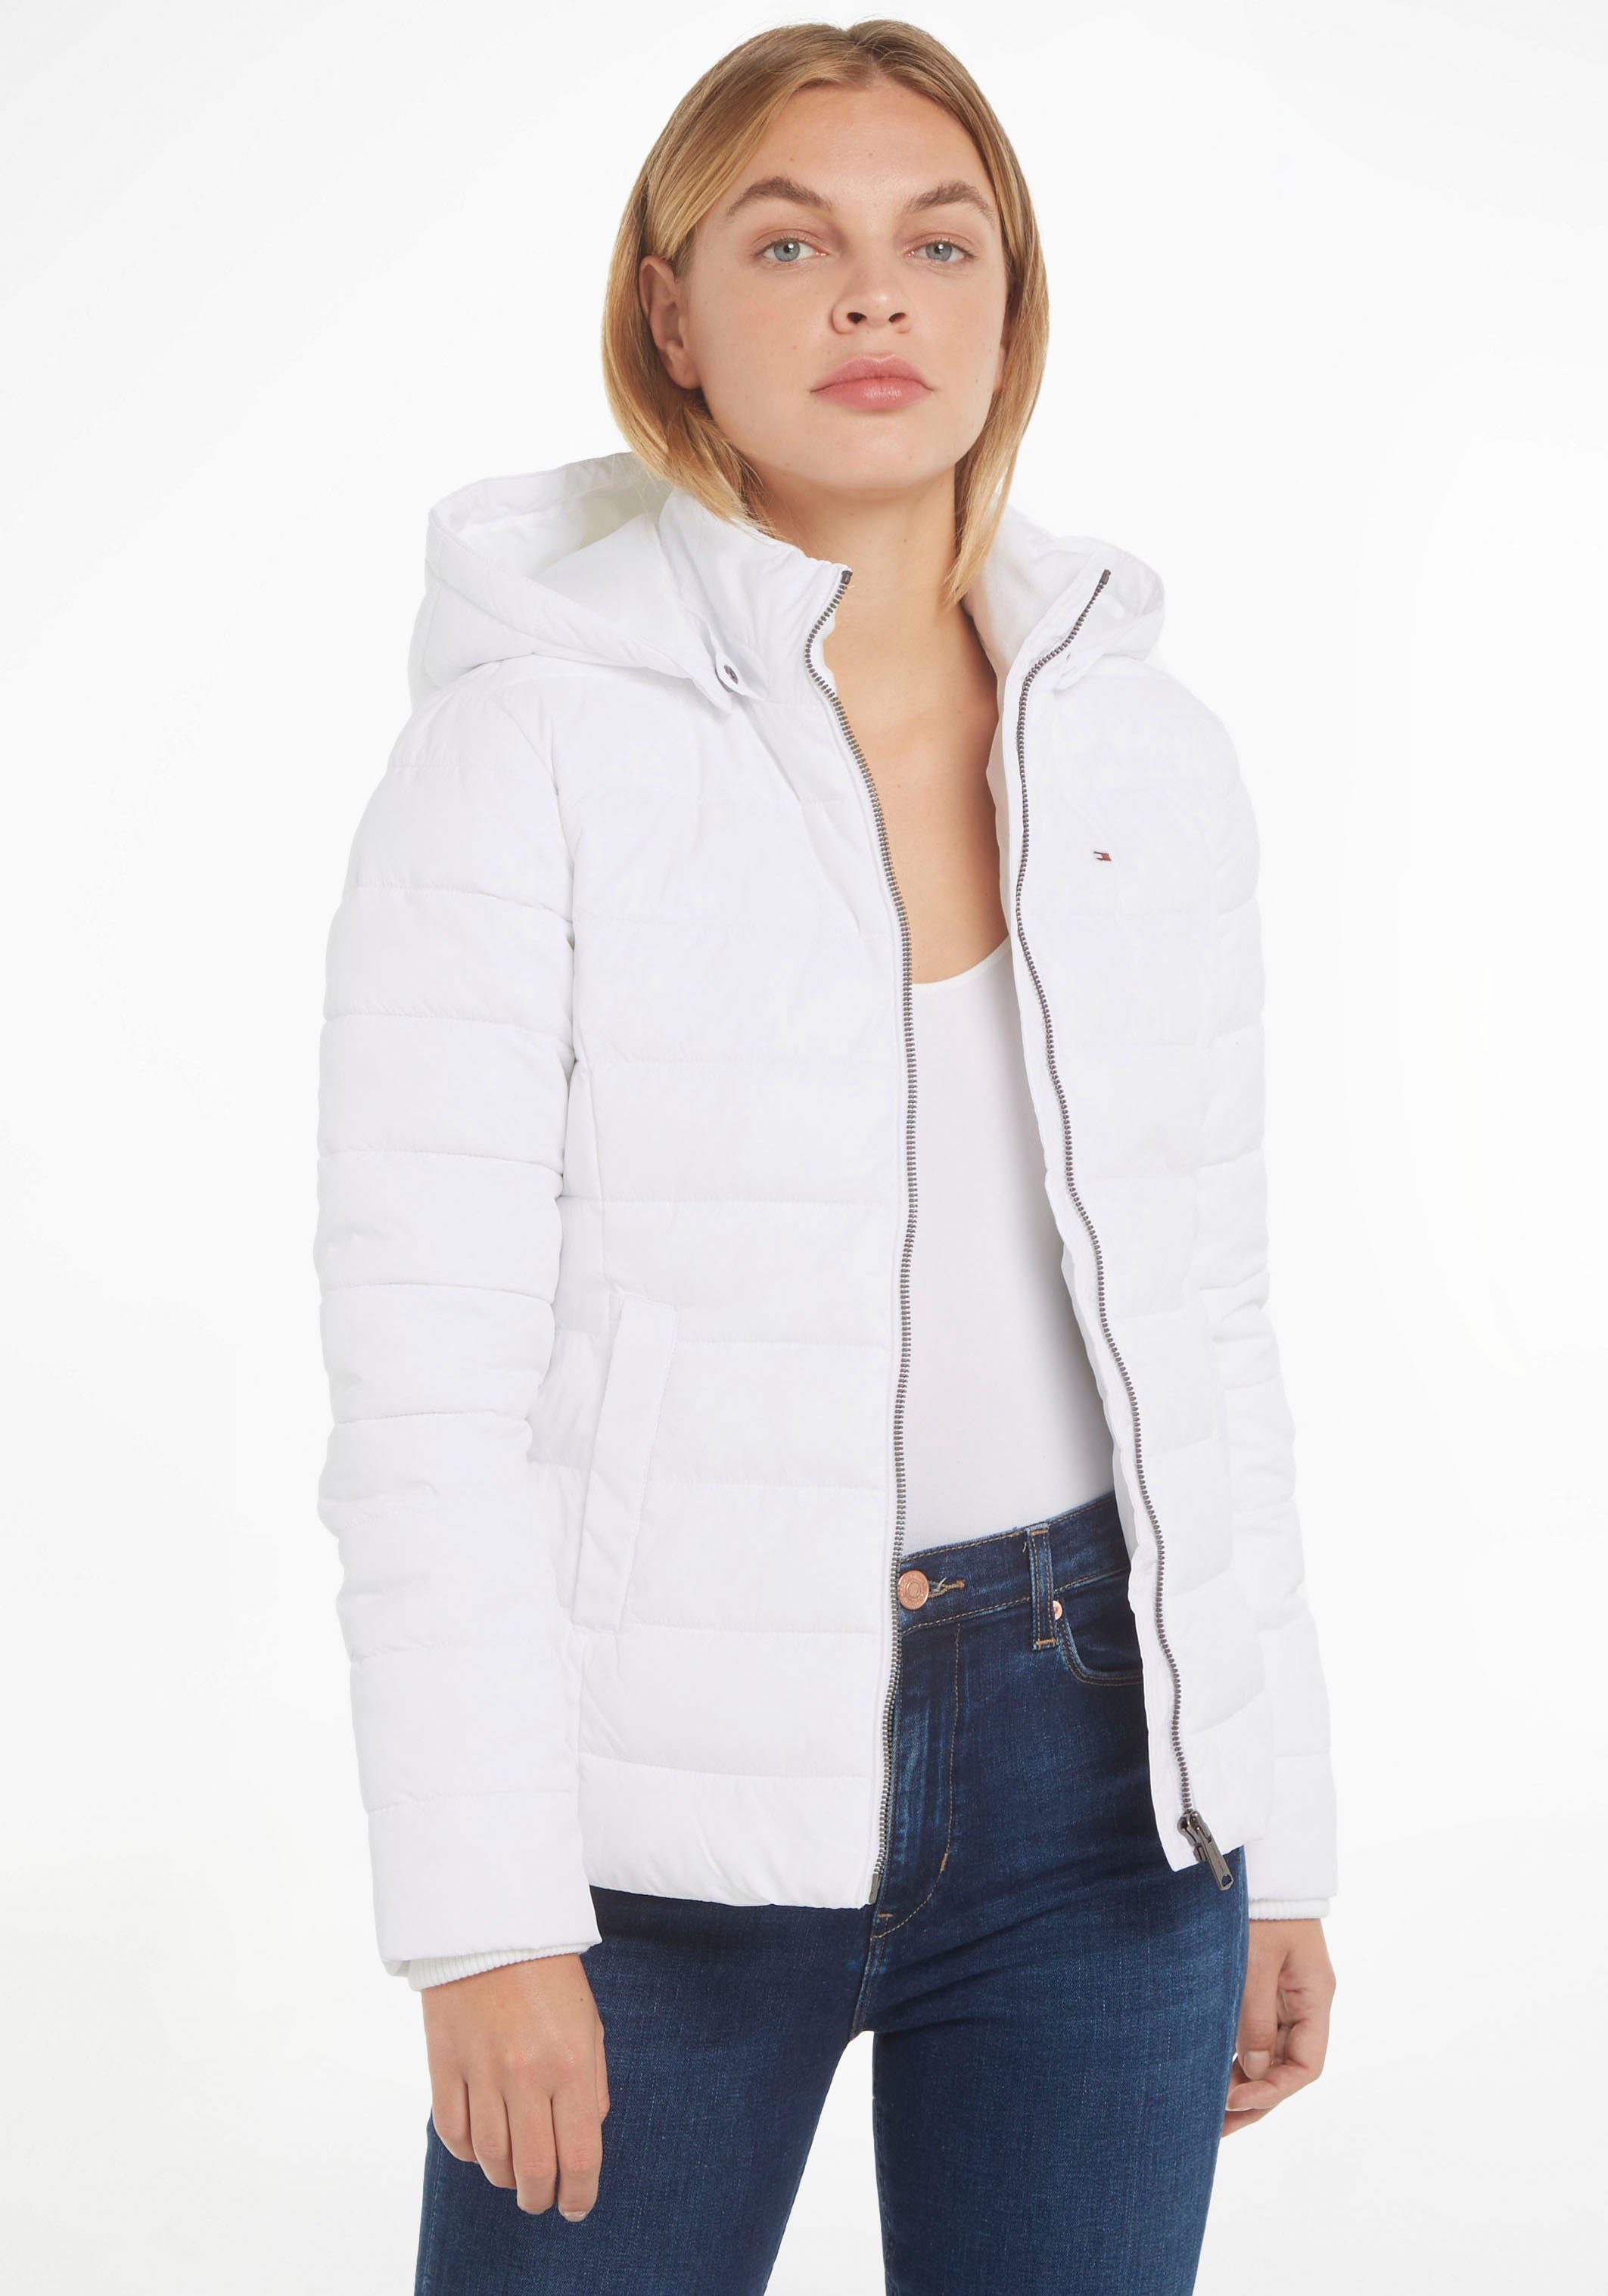 Weiße Jacken für Damen online kaufen | OTTO